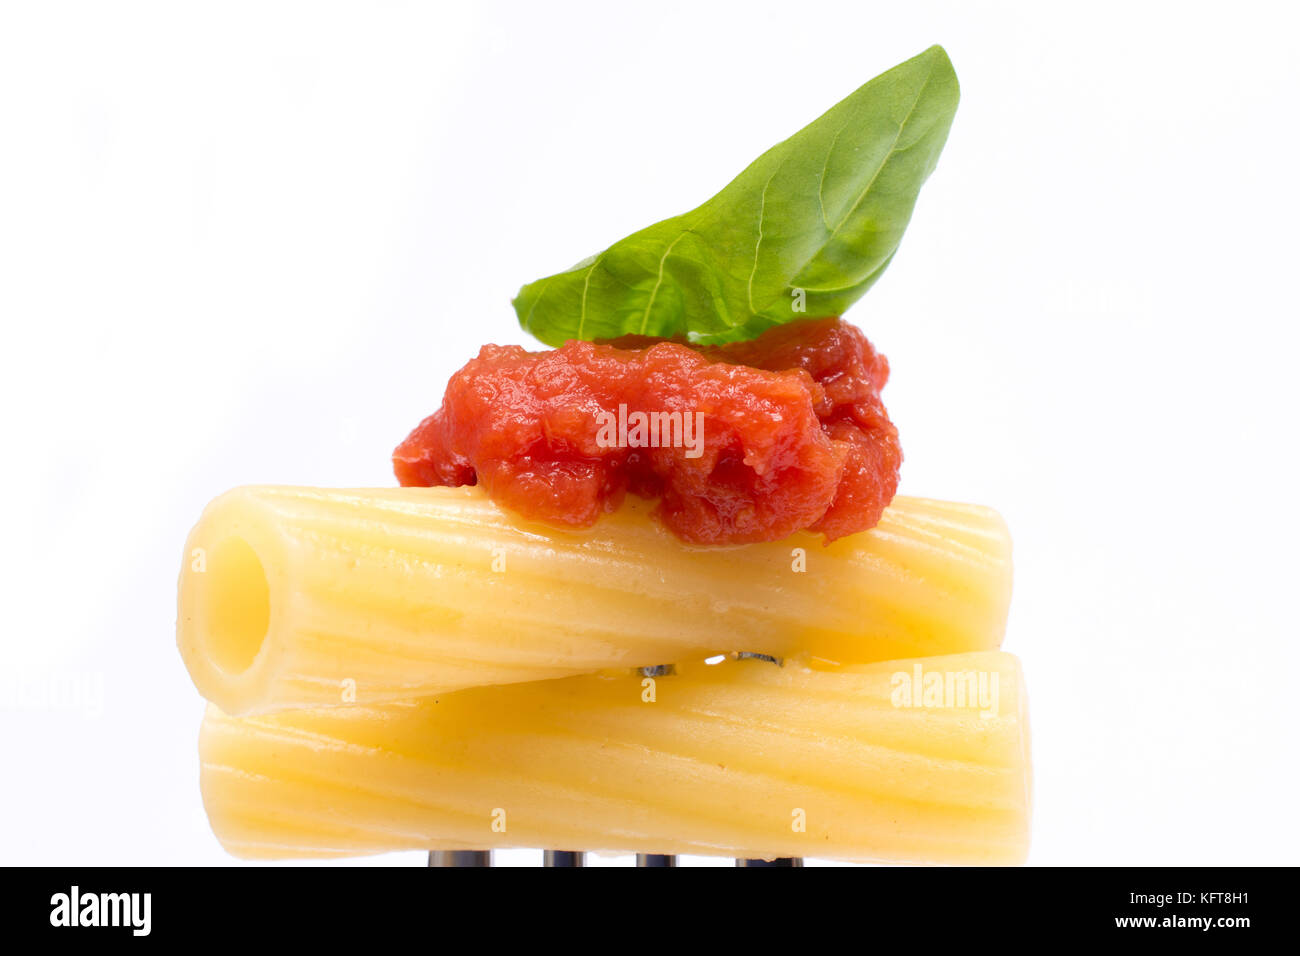 La pasta in bianco sullo sfondo. rigatoni, pomodoro e basilico sulla forcella. cucina italiana concept Foto Stock